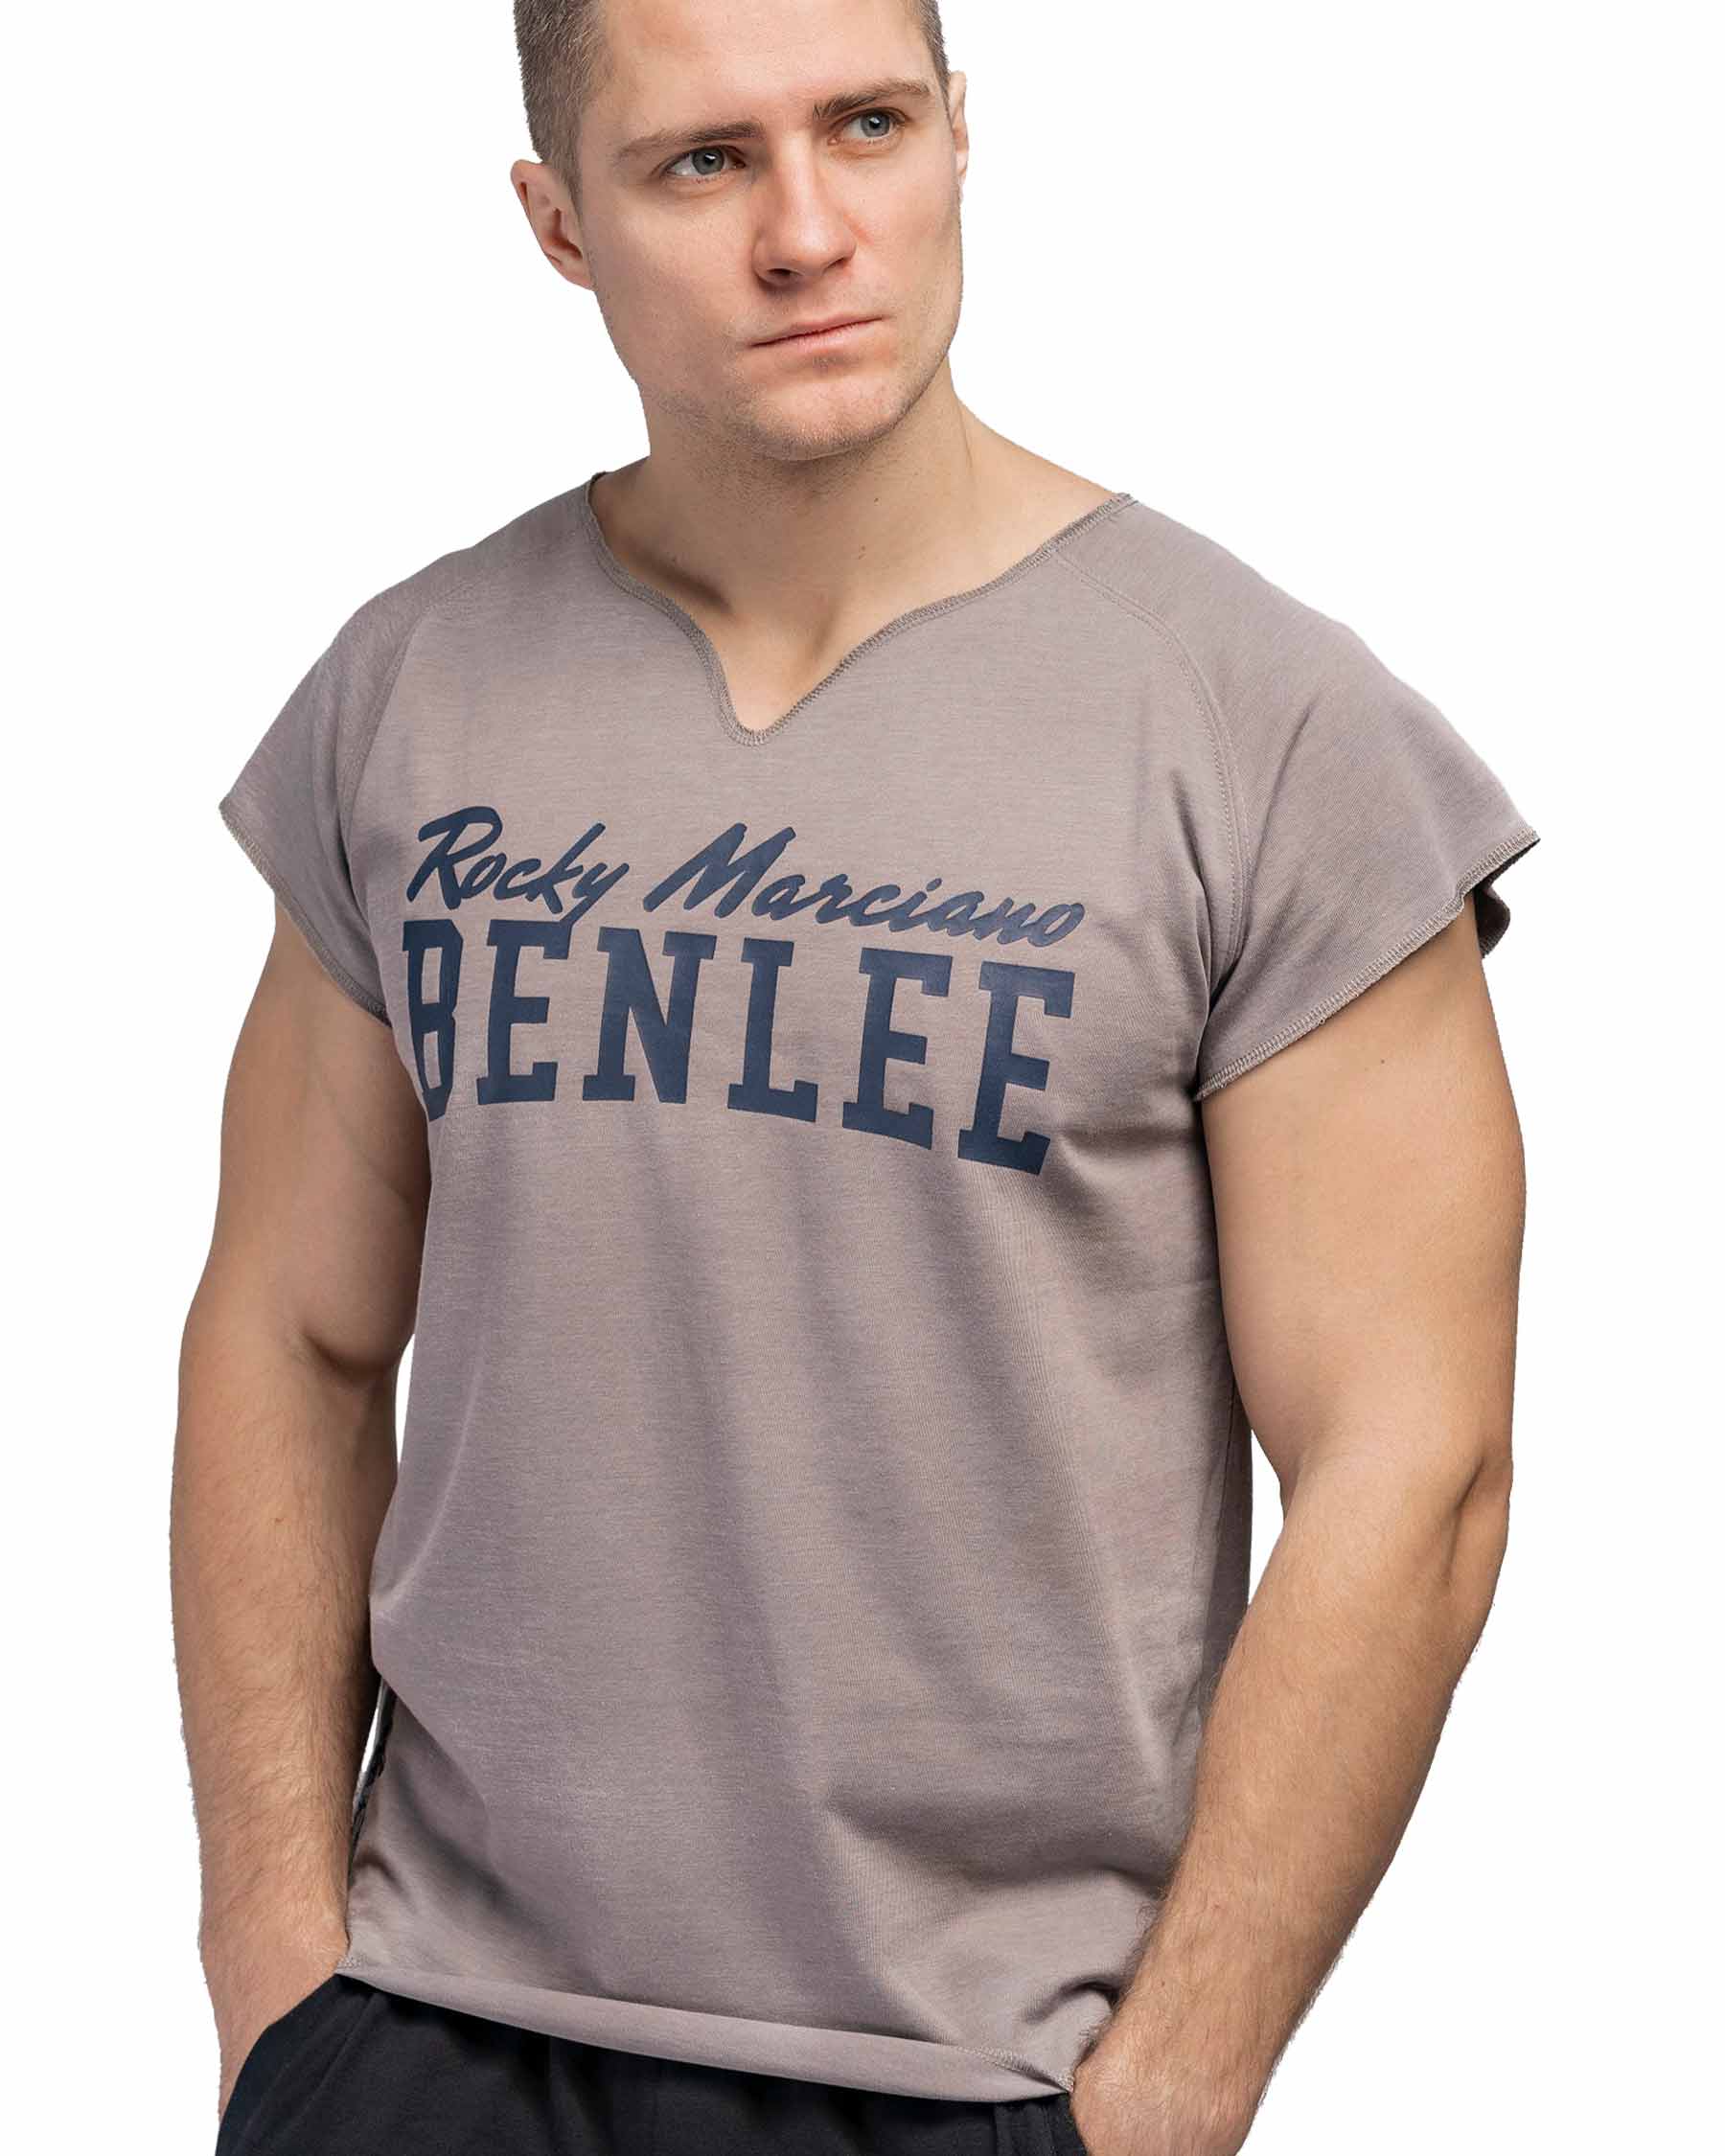 BenLee Muscle shirt Edwards - Herren T-Shirt - BenLee Sportswear und  Boxsport